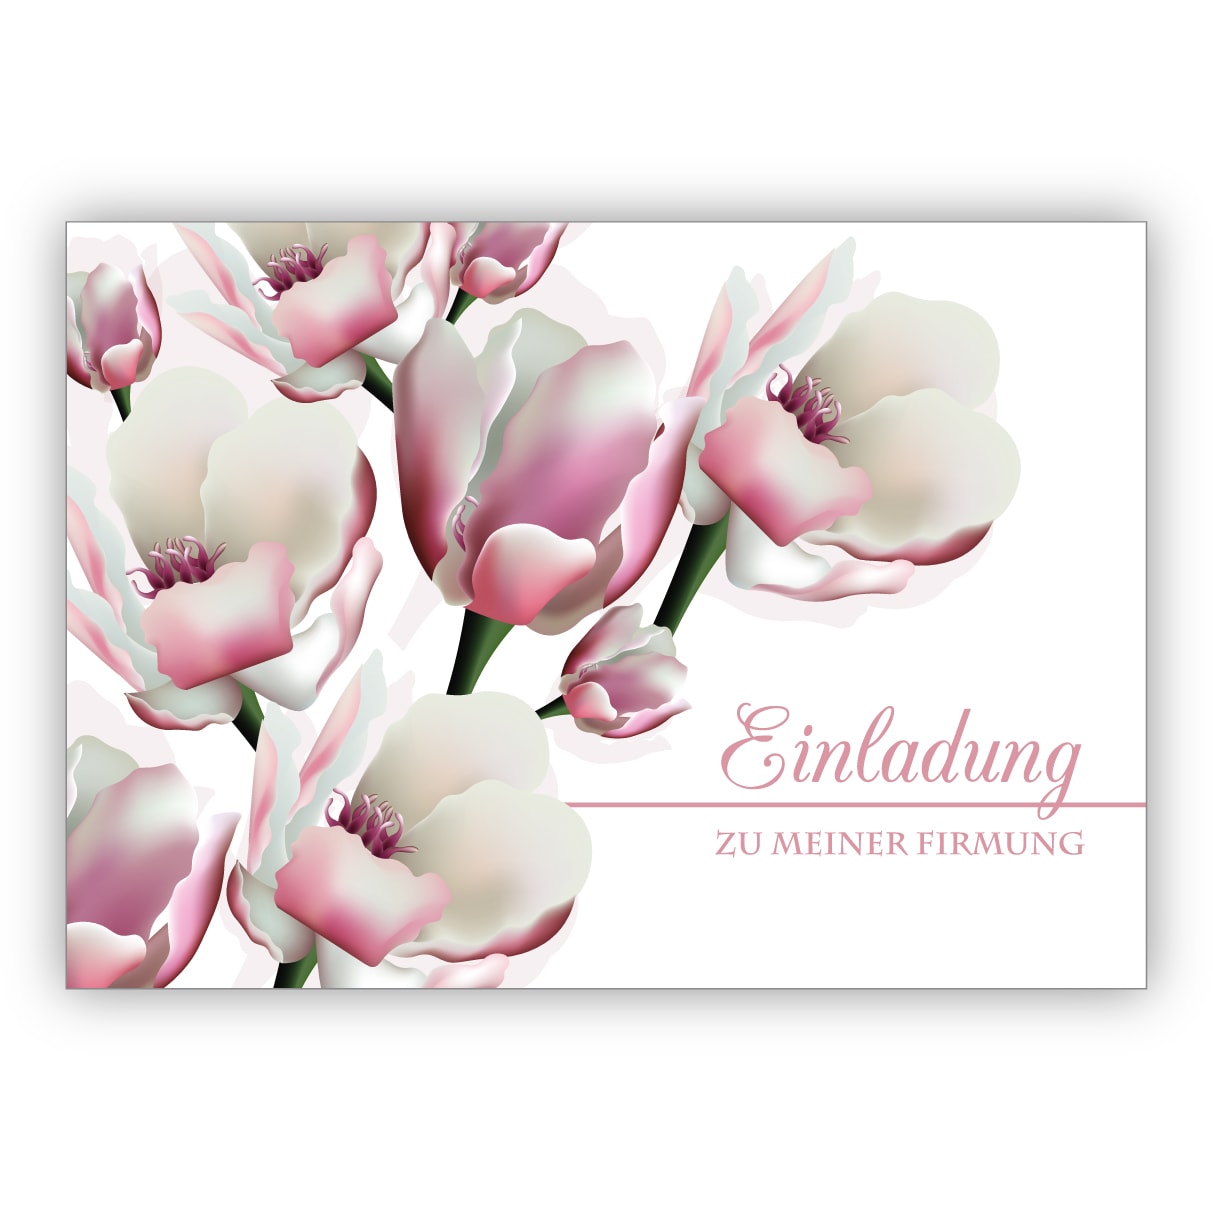 Edle leichte Einladungskarte mit üppigen Blüten: Einladung zu meiner Firmung